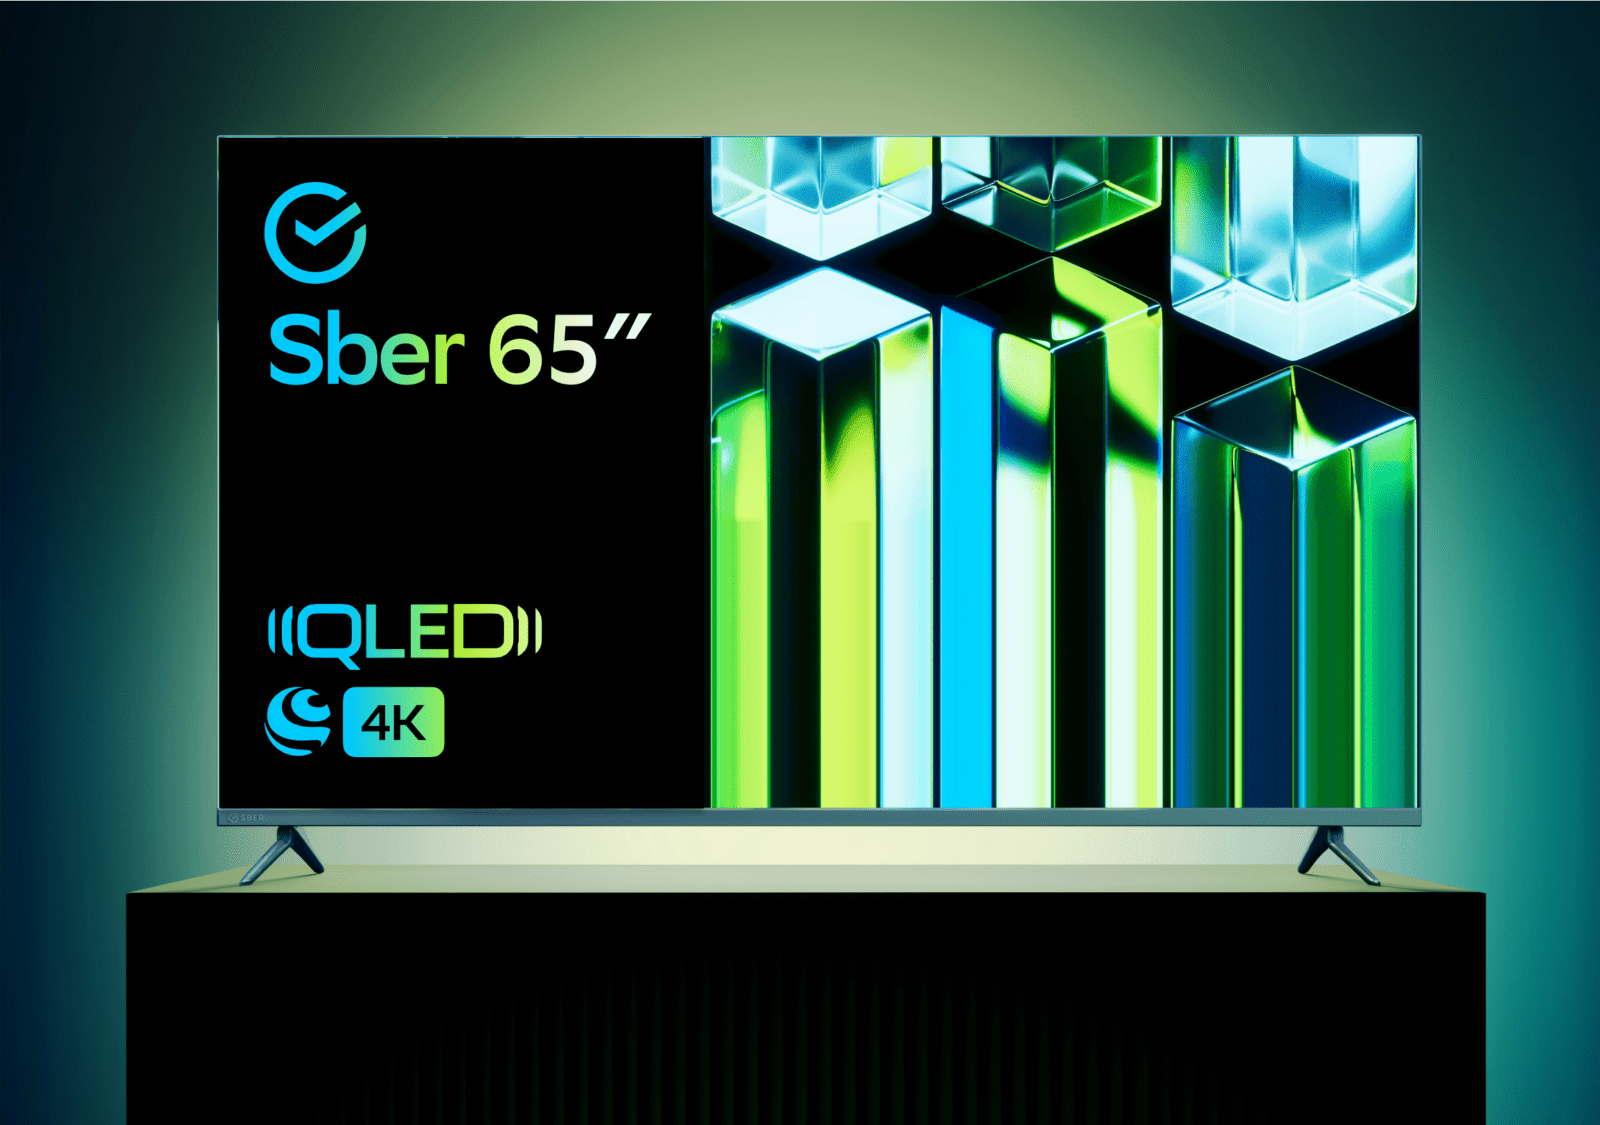 Сбер запустил в продажу 21 новую модель умных телевизоров (img 7473)